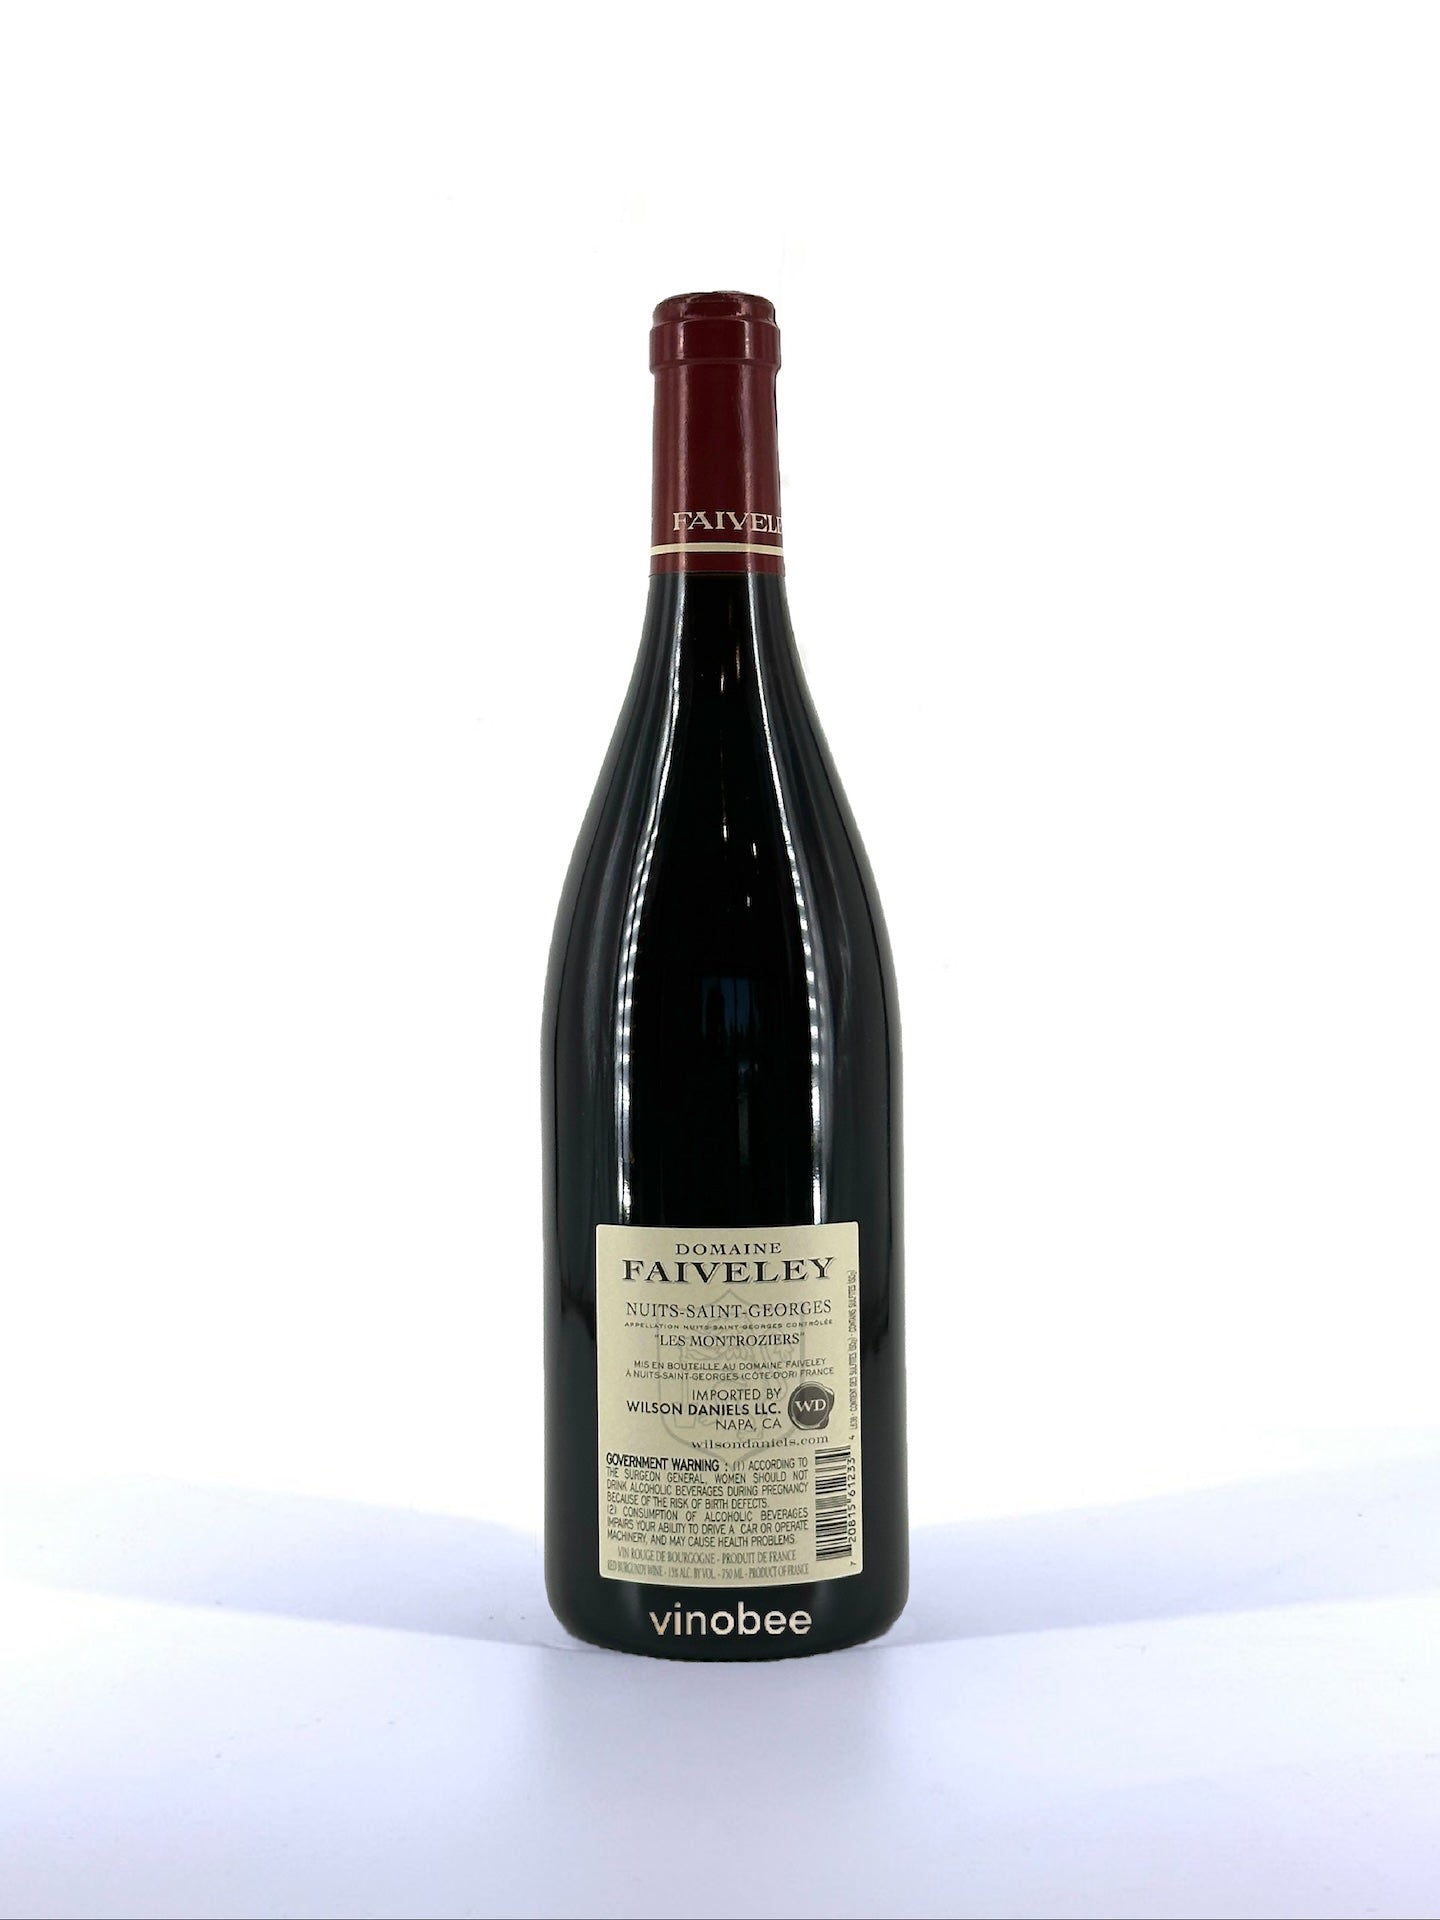 Domaine Faiveley Nuits-Saint-Georges Les Montroziers Pinot Noir 2021 750ML